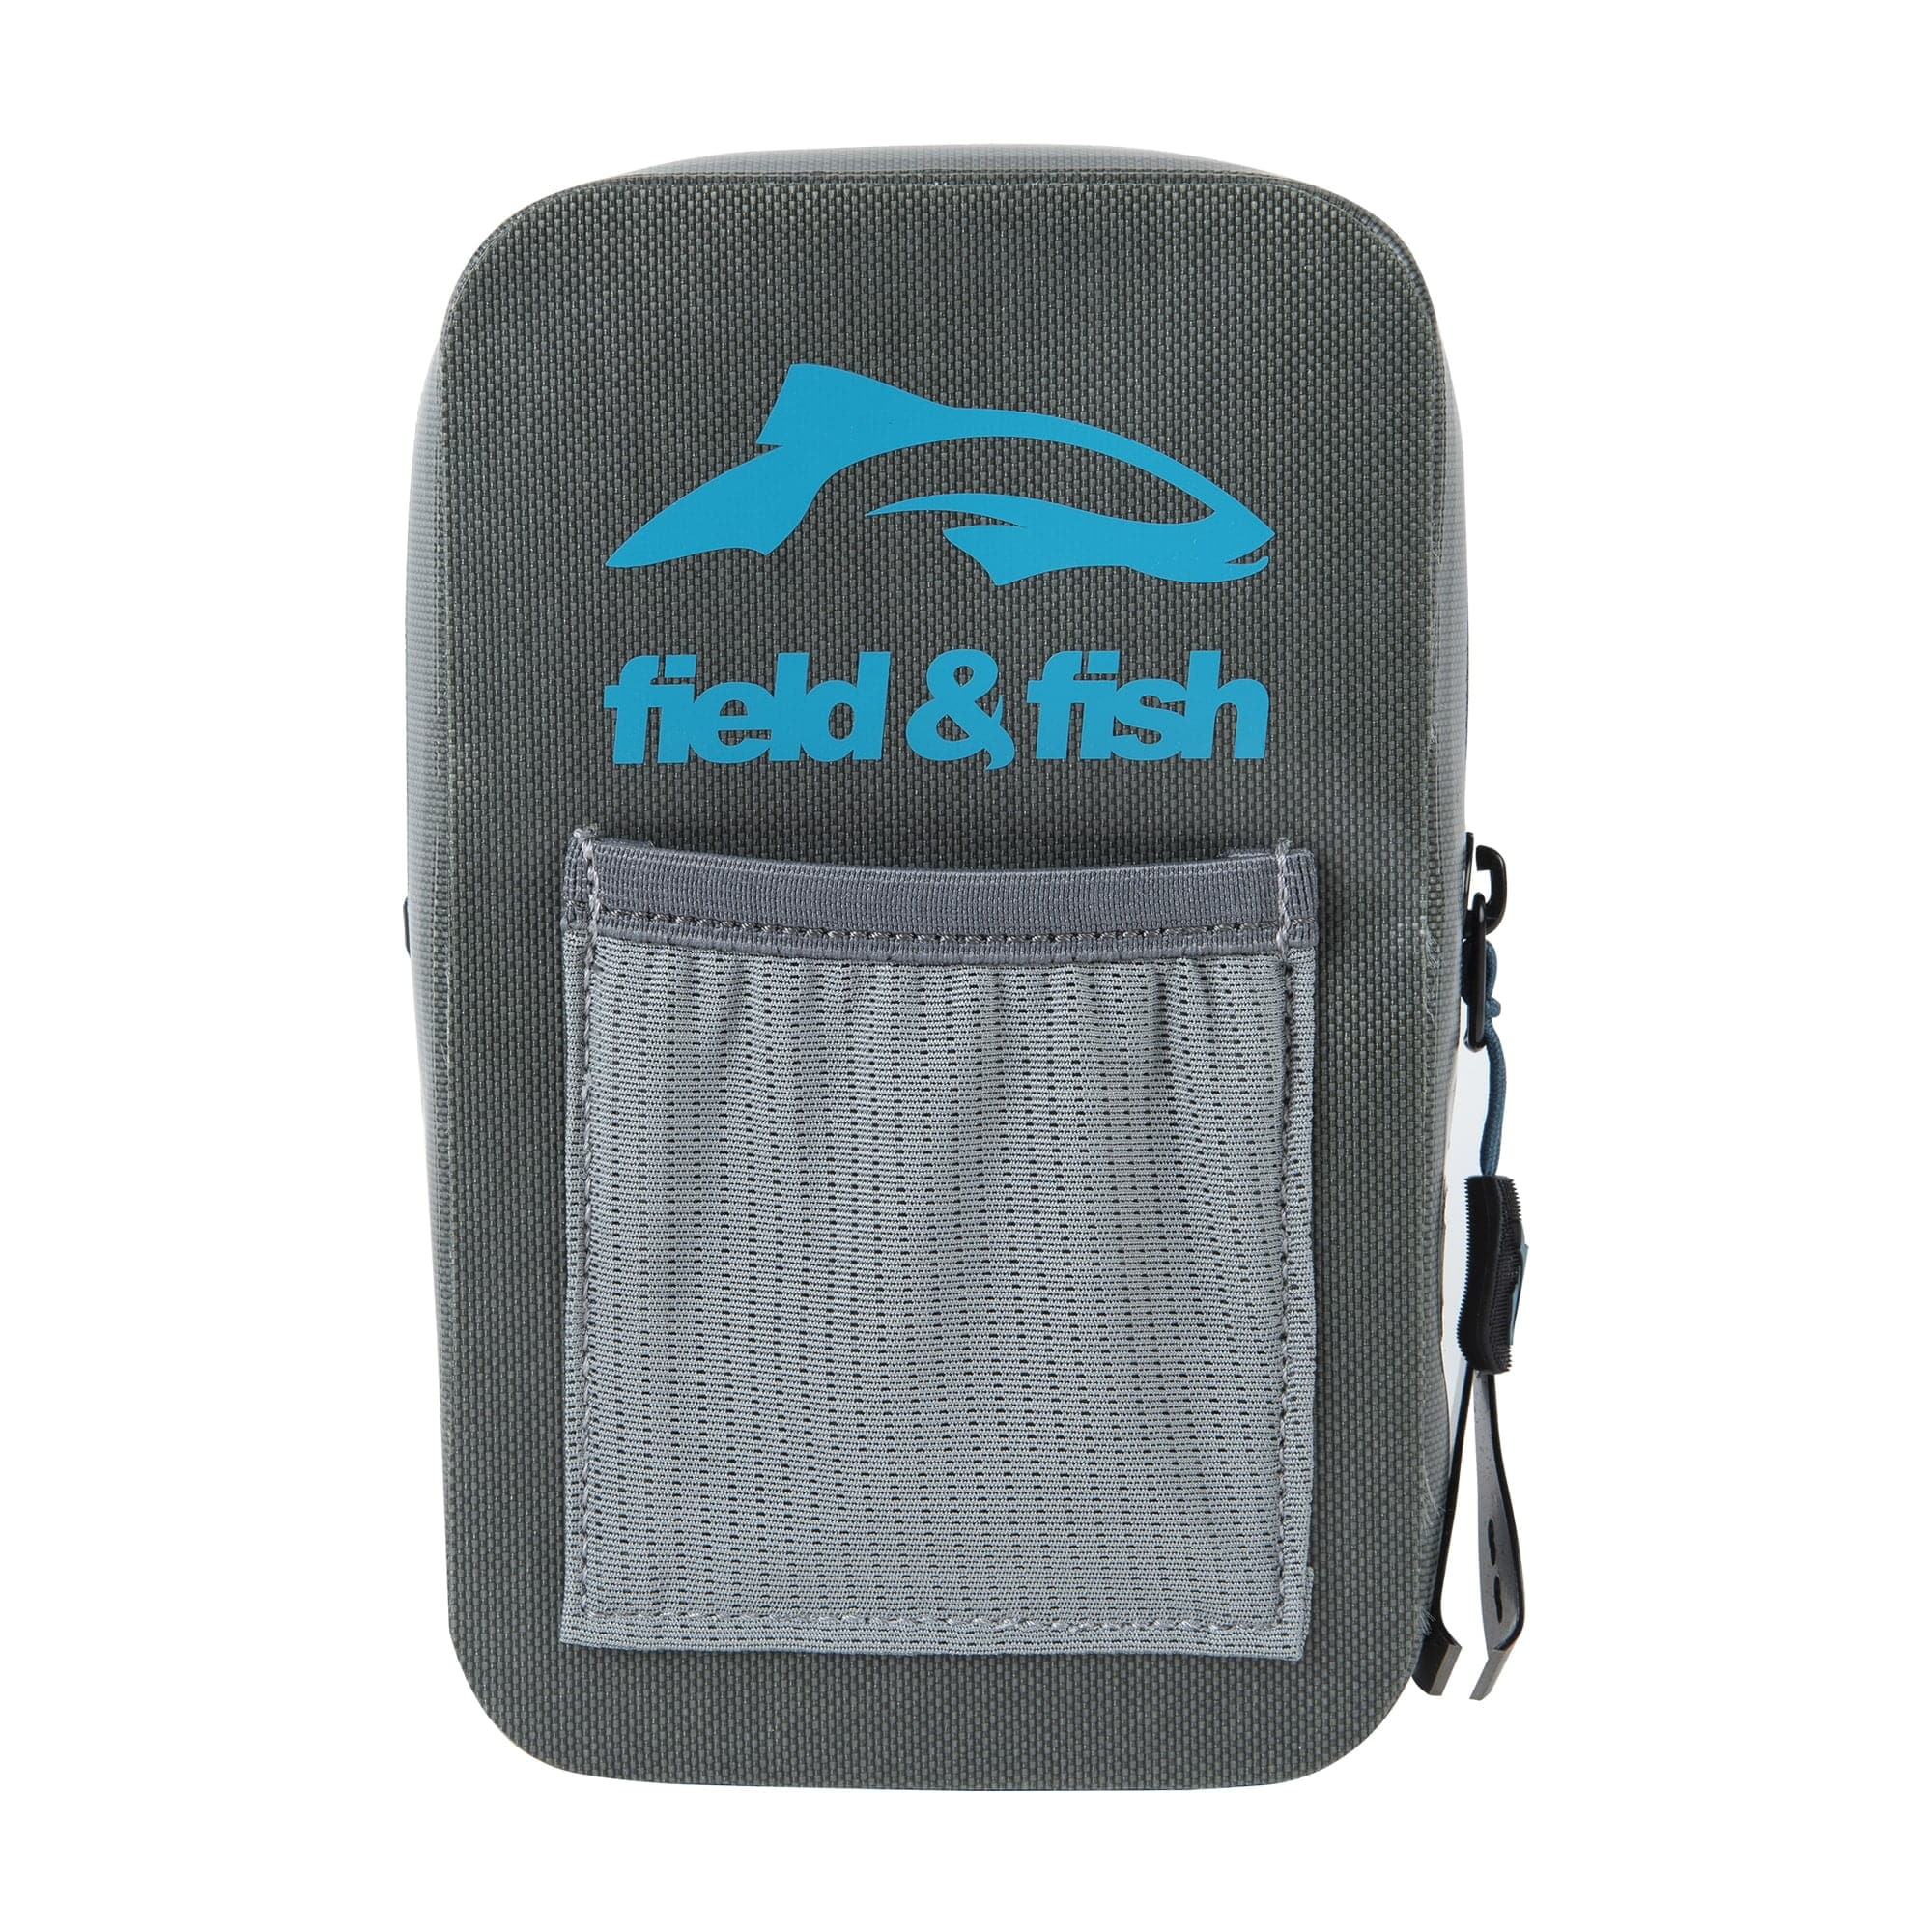 Waterproof pouch - Field & Fish